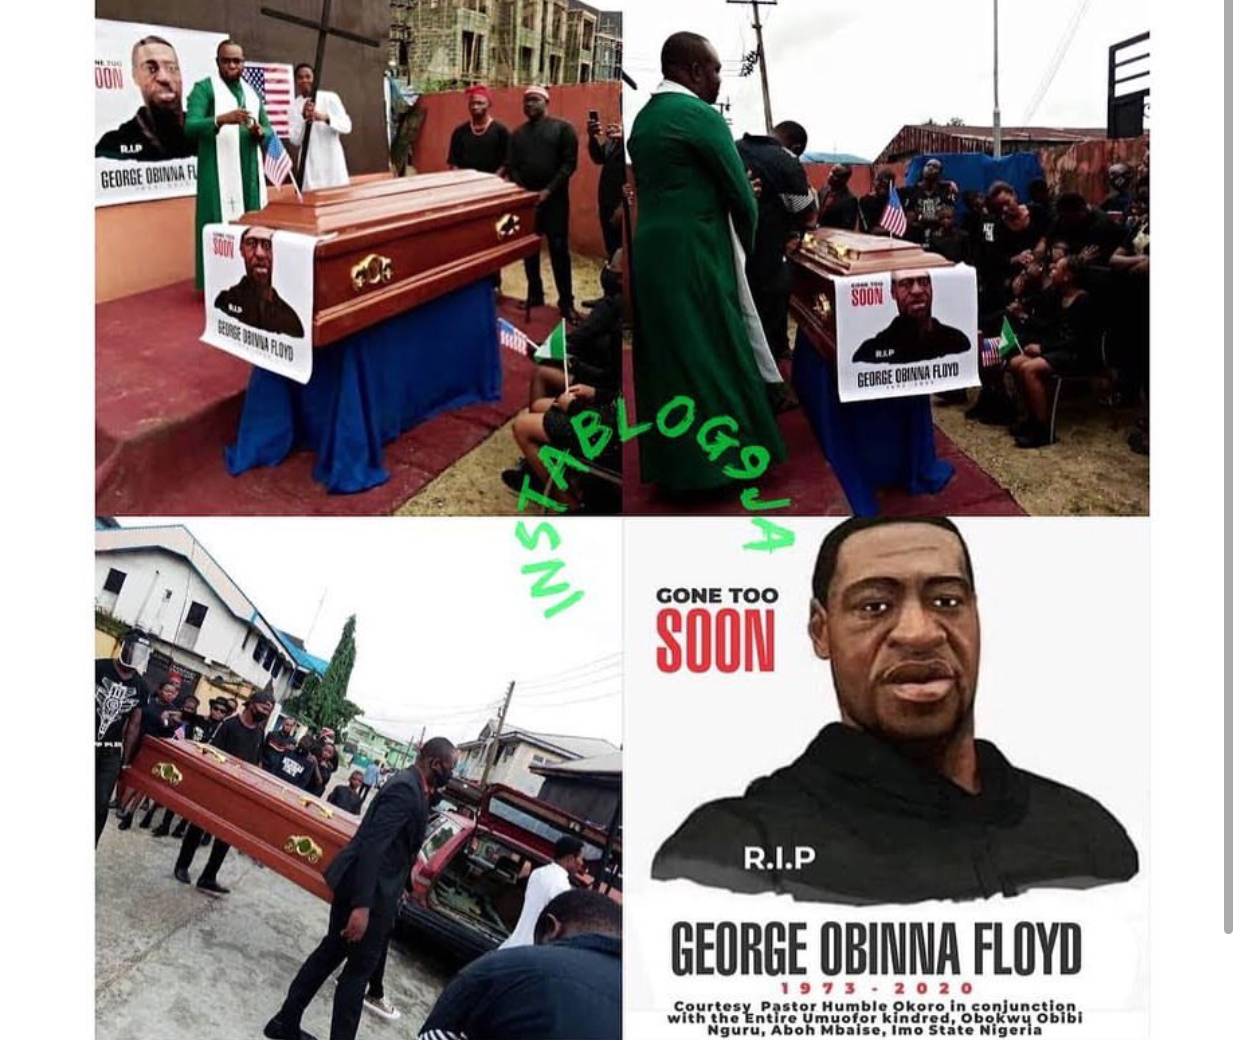 Pastor reburies George Floyd